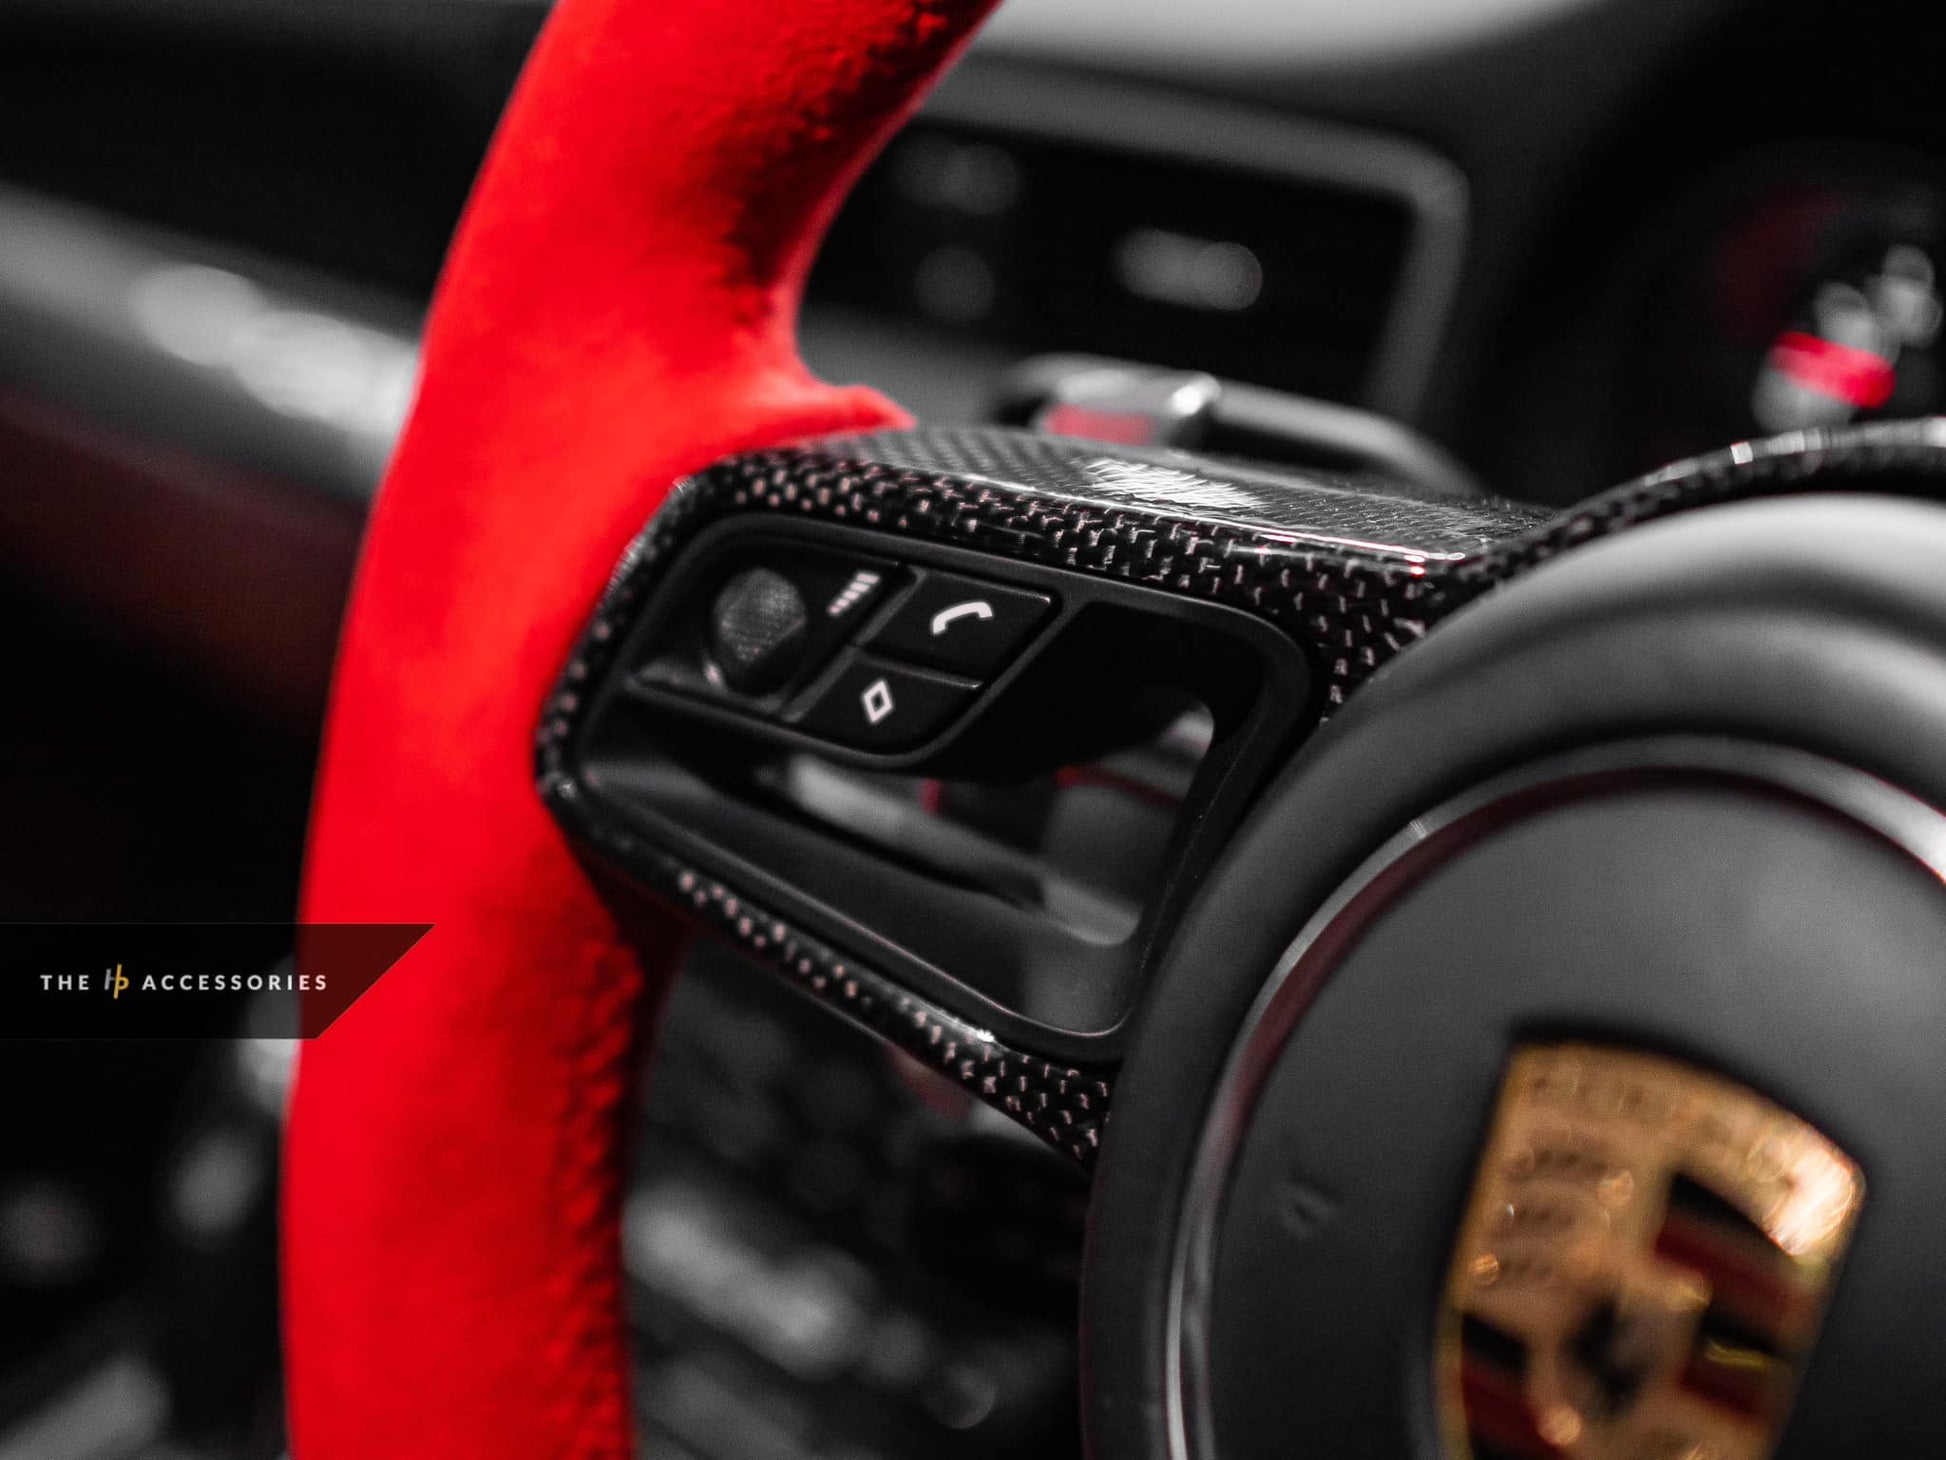 Porsche 911 991.2 Interior & Exterior Accessories Kit – The HP Accessories